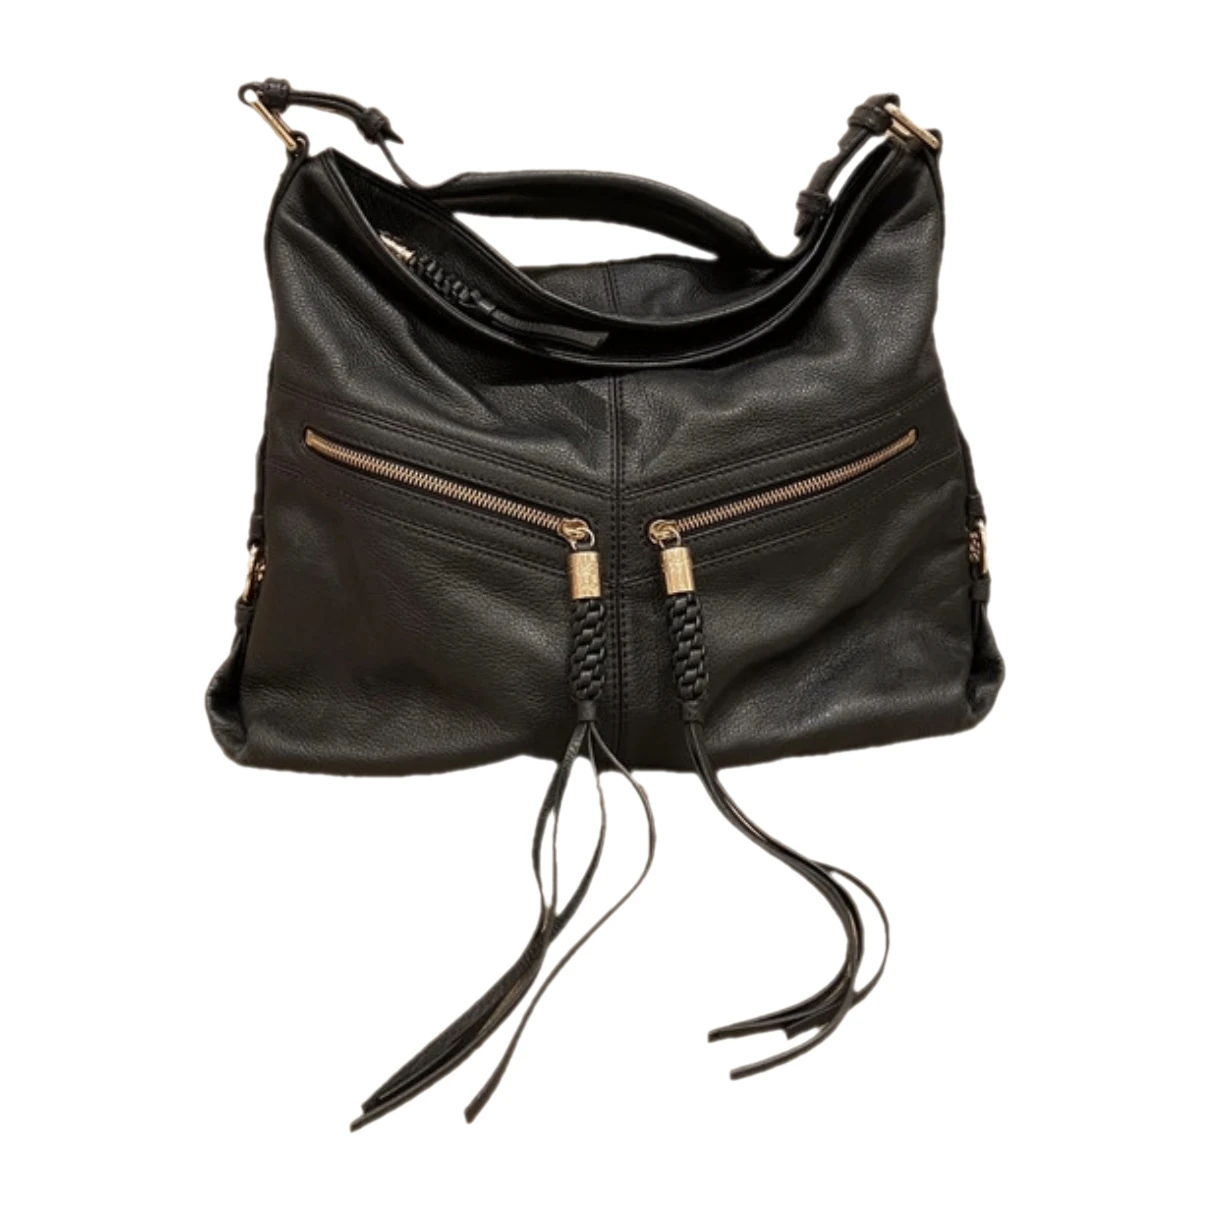 Pre-owned Lancel Leather Handbag In Black